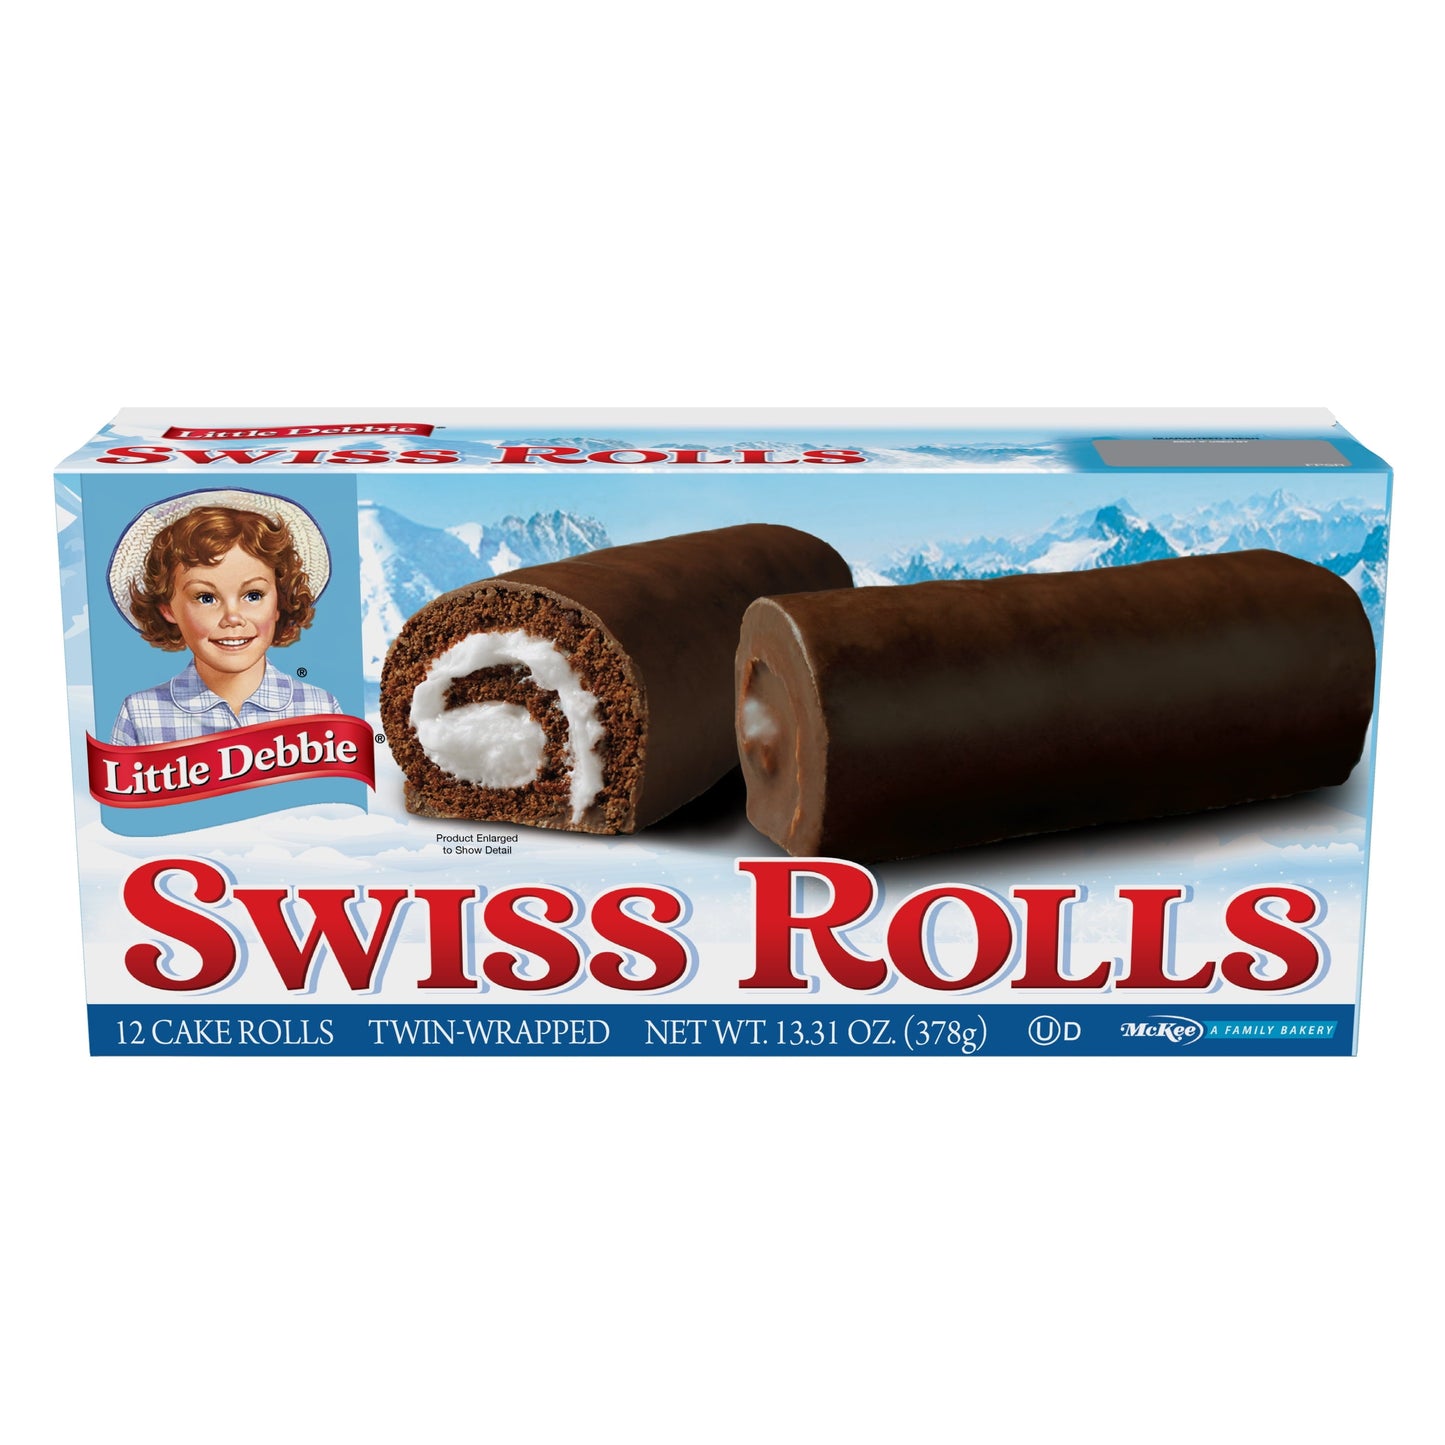 Little Debbie Swiss Rolls, 12 Cake Rolls (Twin Wrapped)